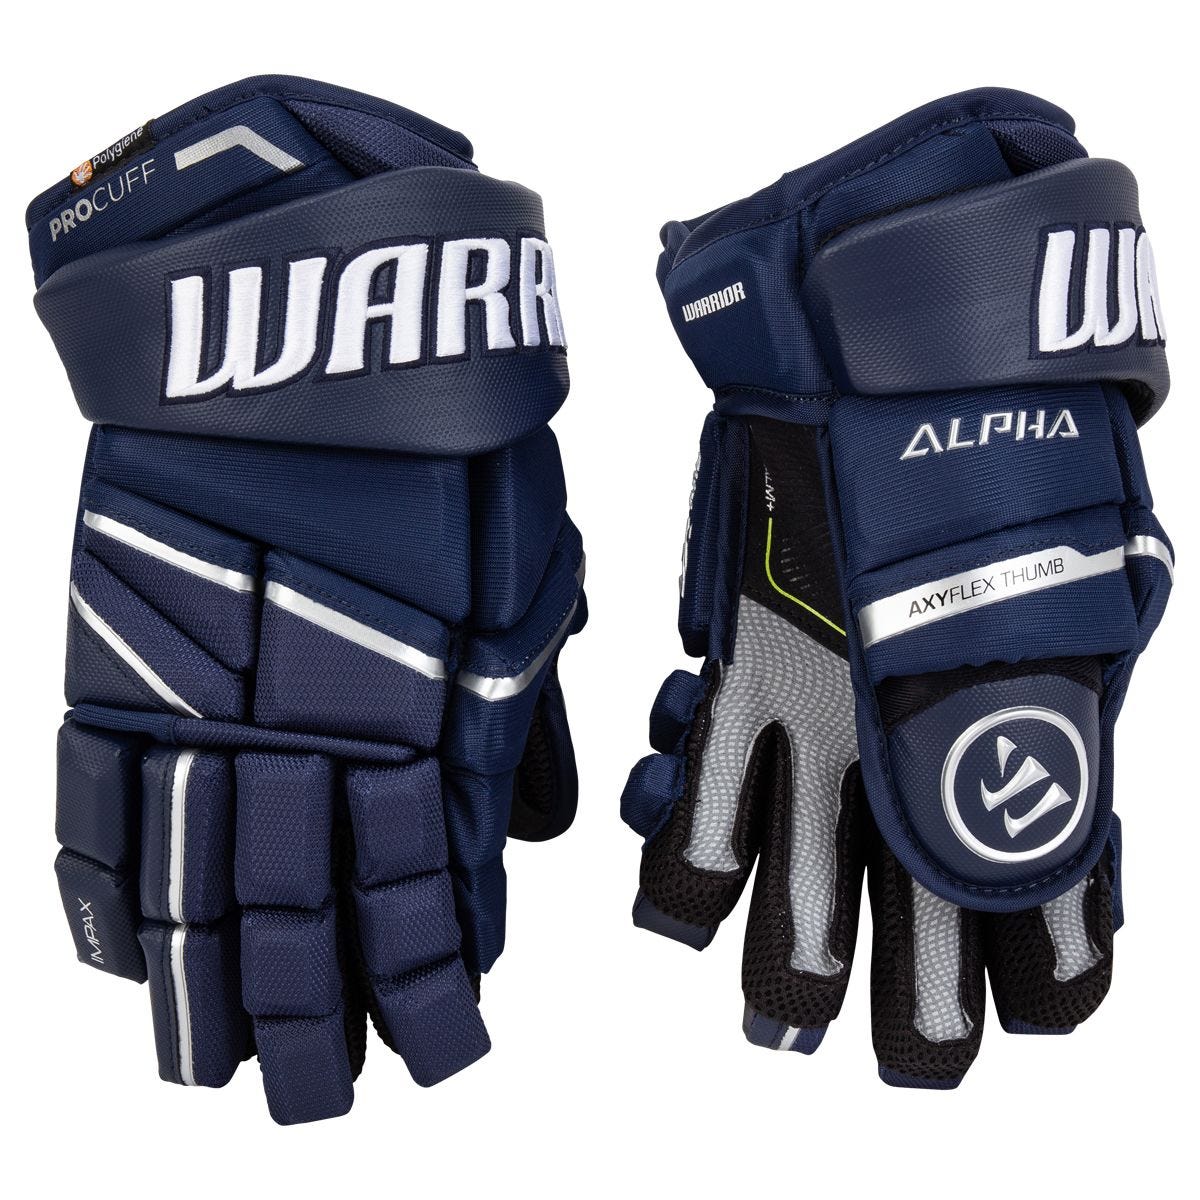 Краги warrior. Warrior Alpha LX Pro Gloves. Warrior QRL Pro перчатки. Хоккейная клюшка Варриор Альфа LX. Краги fr Warrior Alpha.